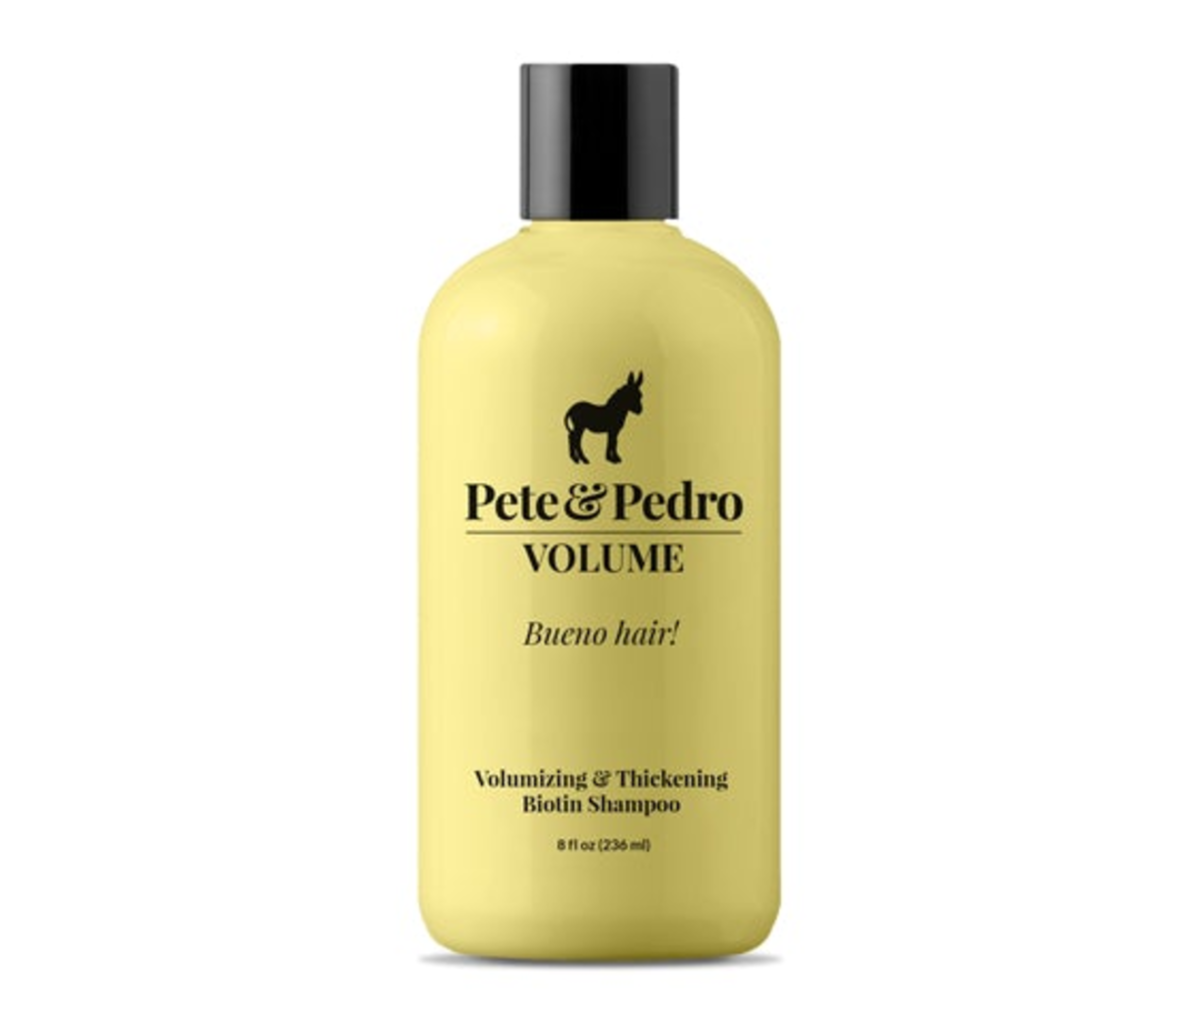 Pete & Pedro VOLUME Volumizing and Thickening Biotin Shampoo